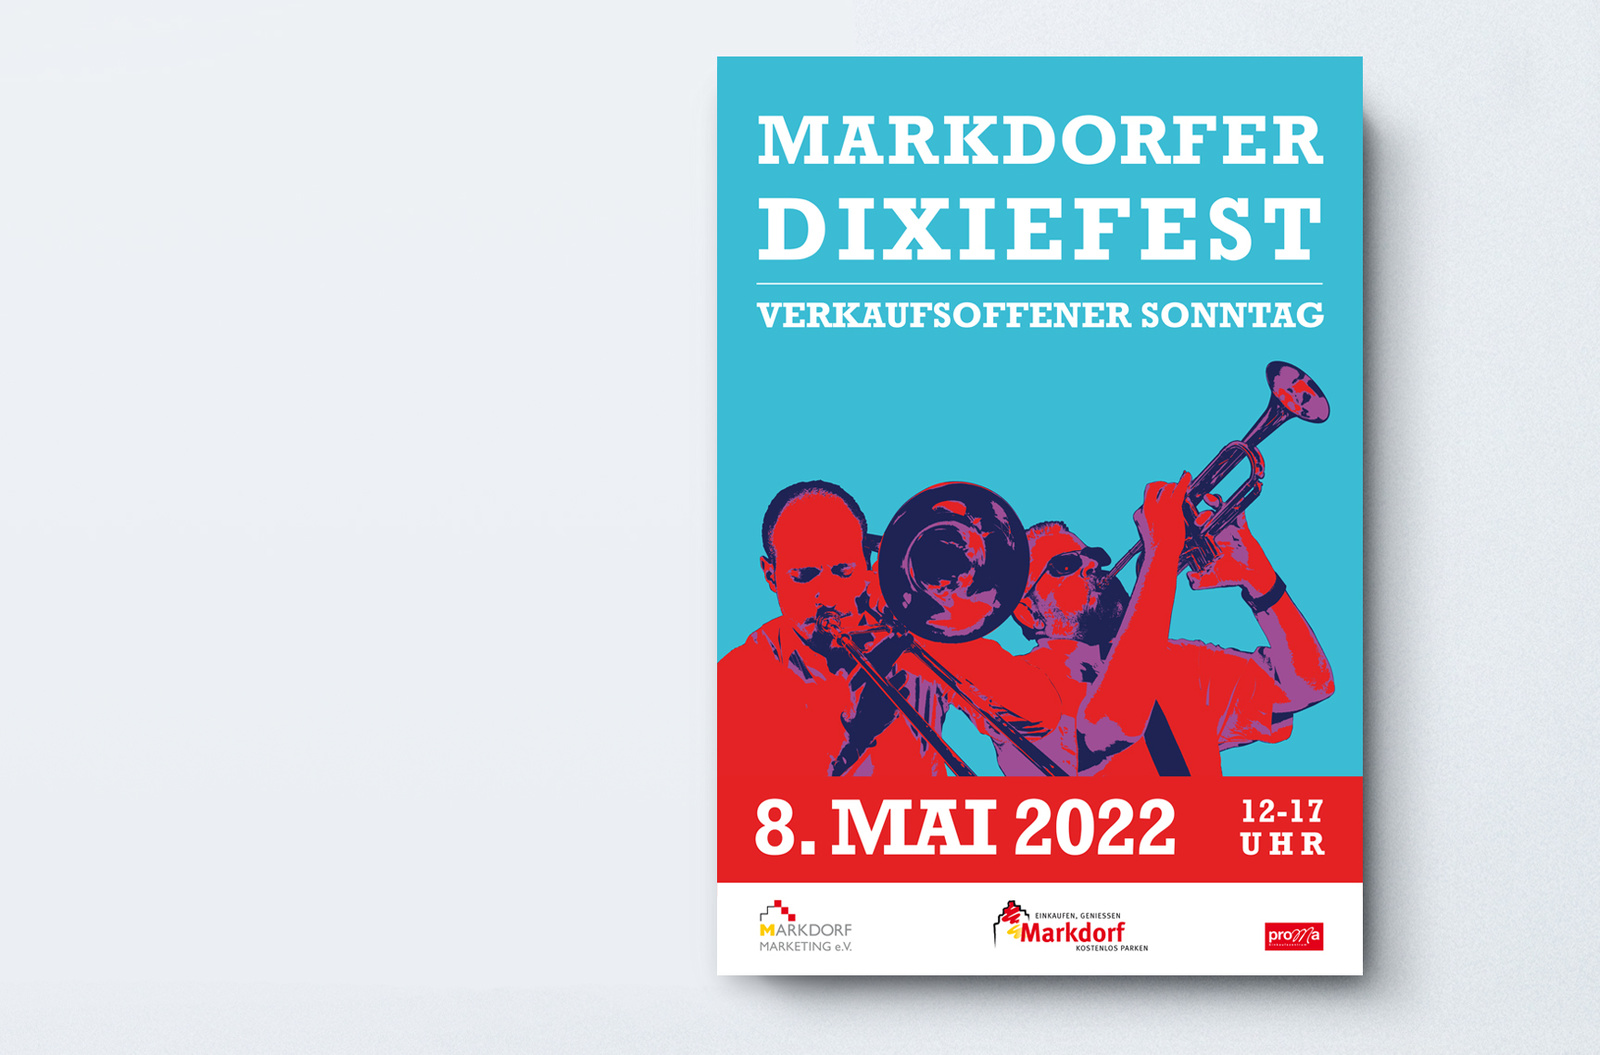 Dixiefest 2022